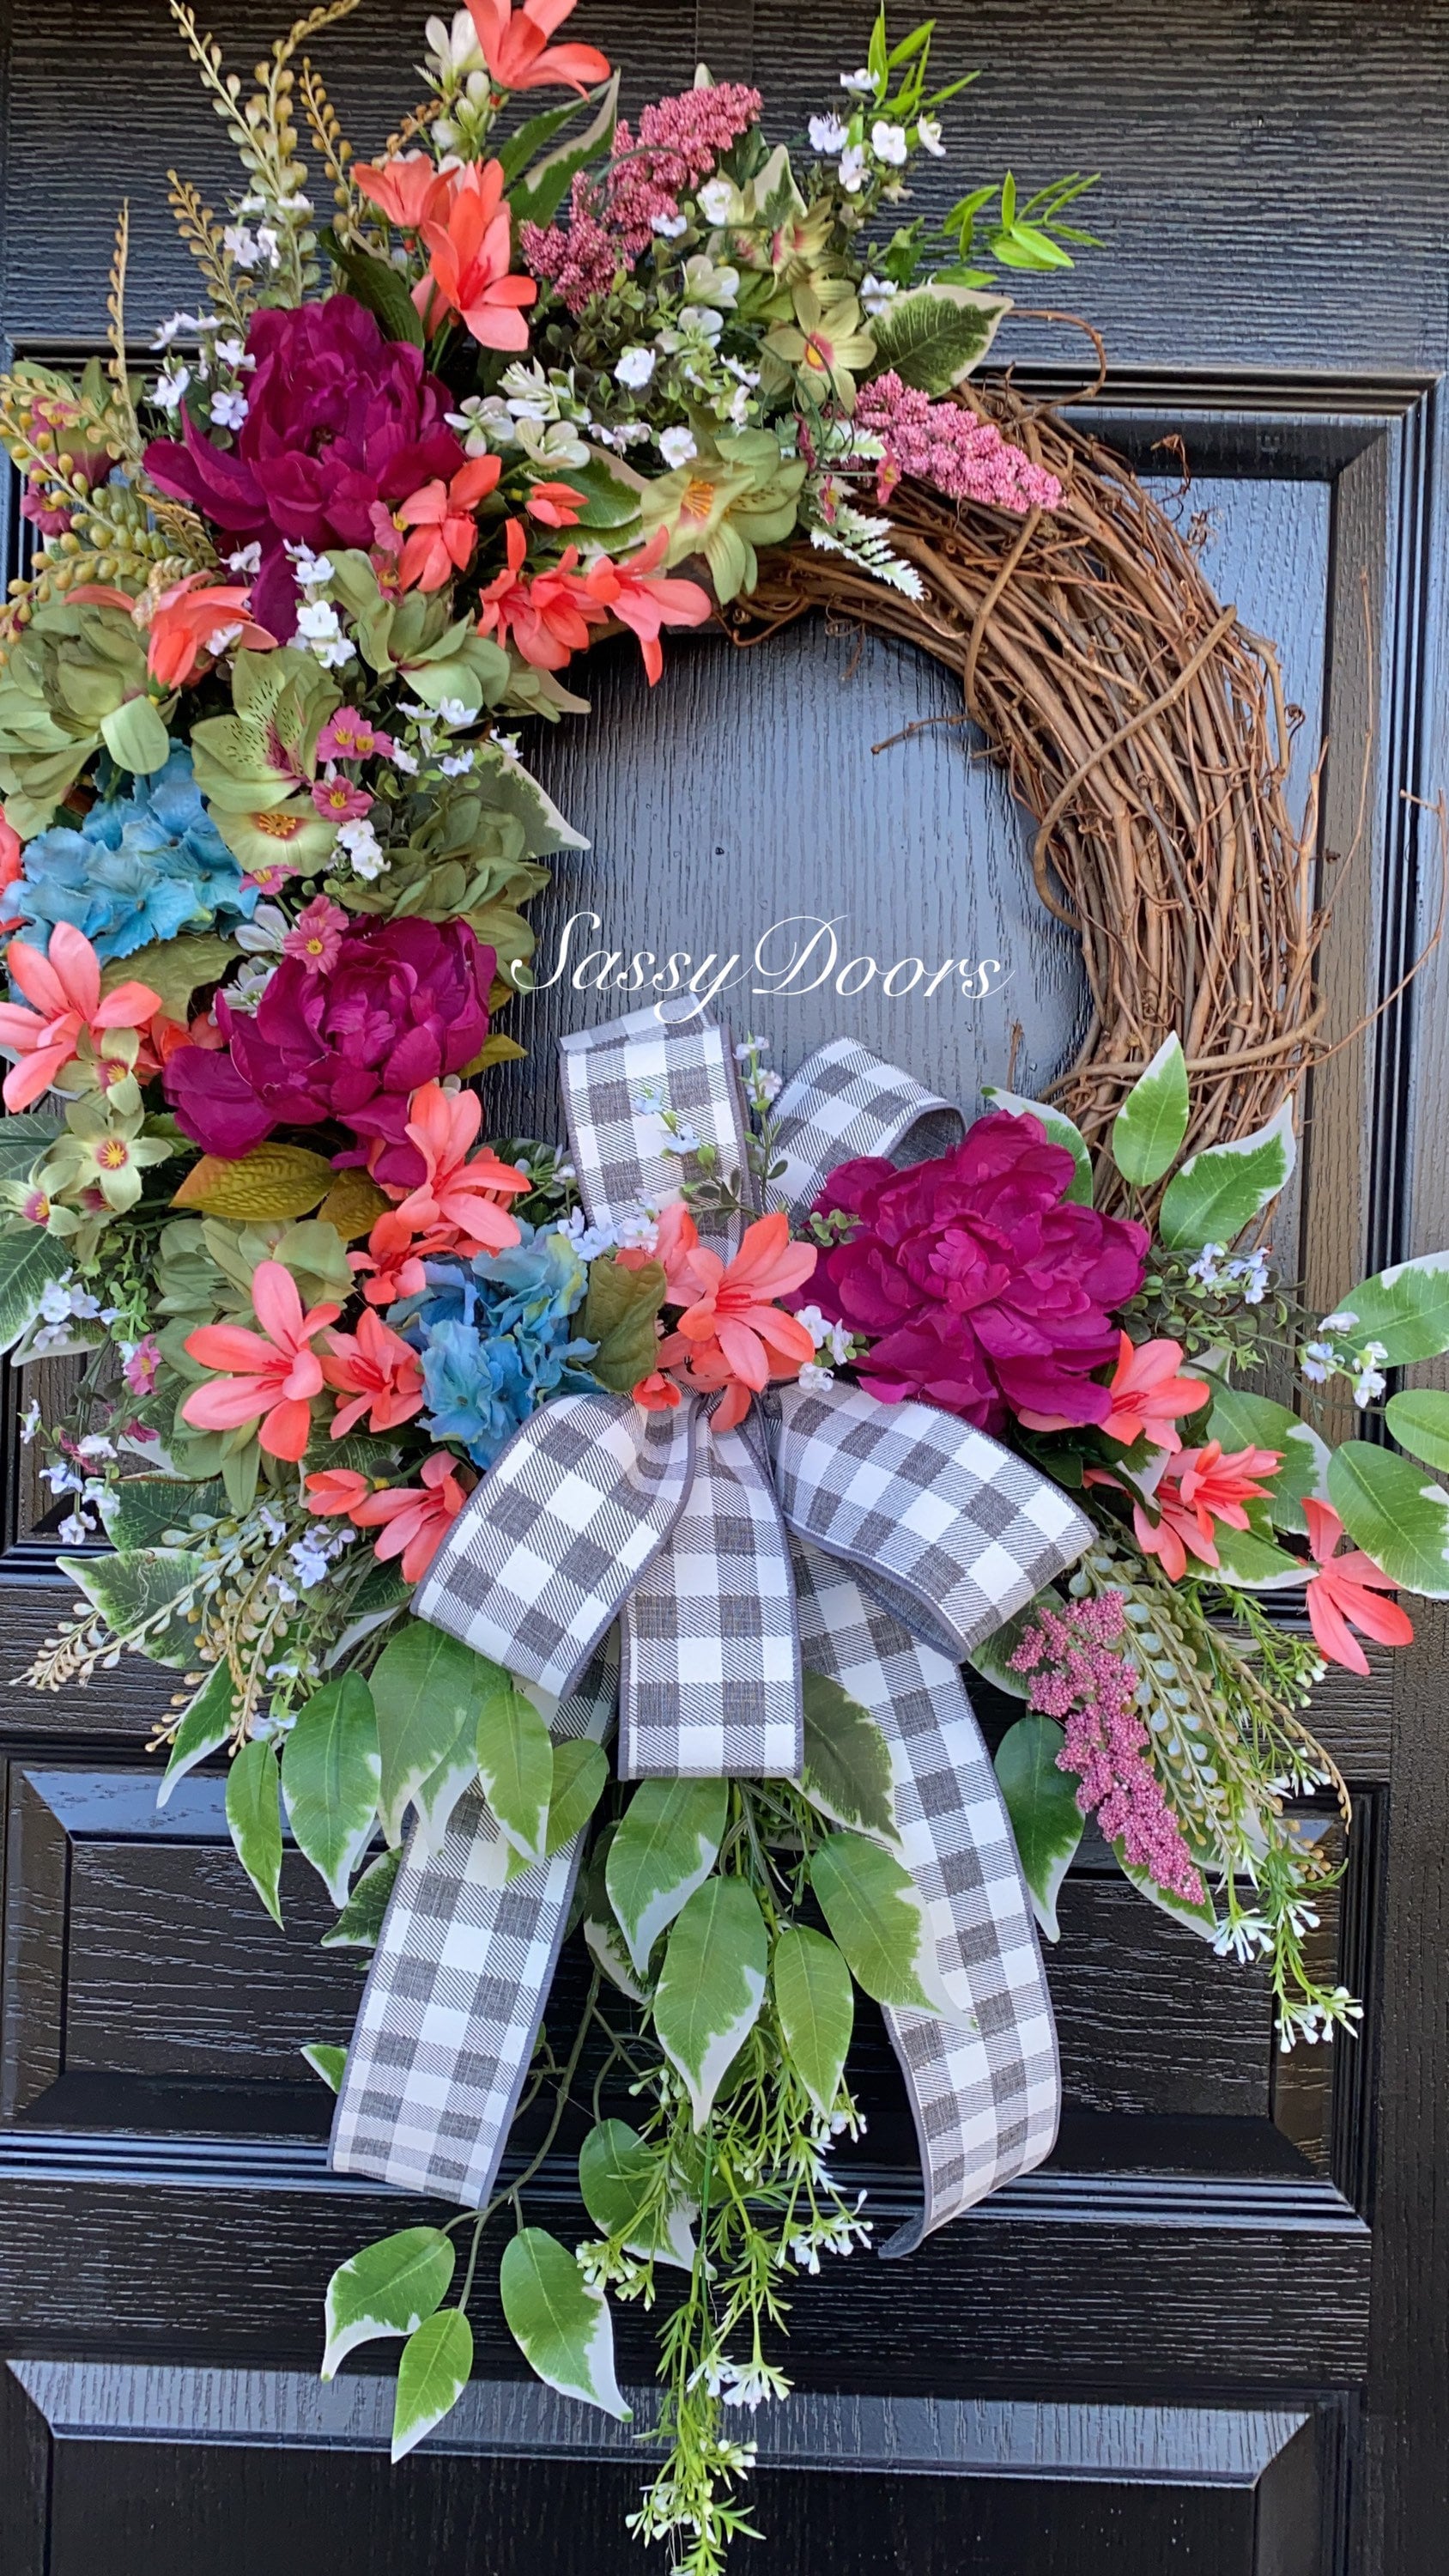 Spring And Summer Wreaths, Door Wreath, Peonies Wreath, Wreath For